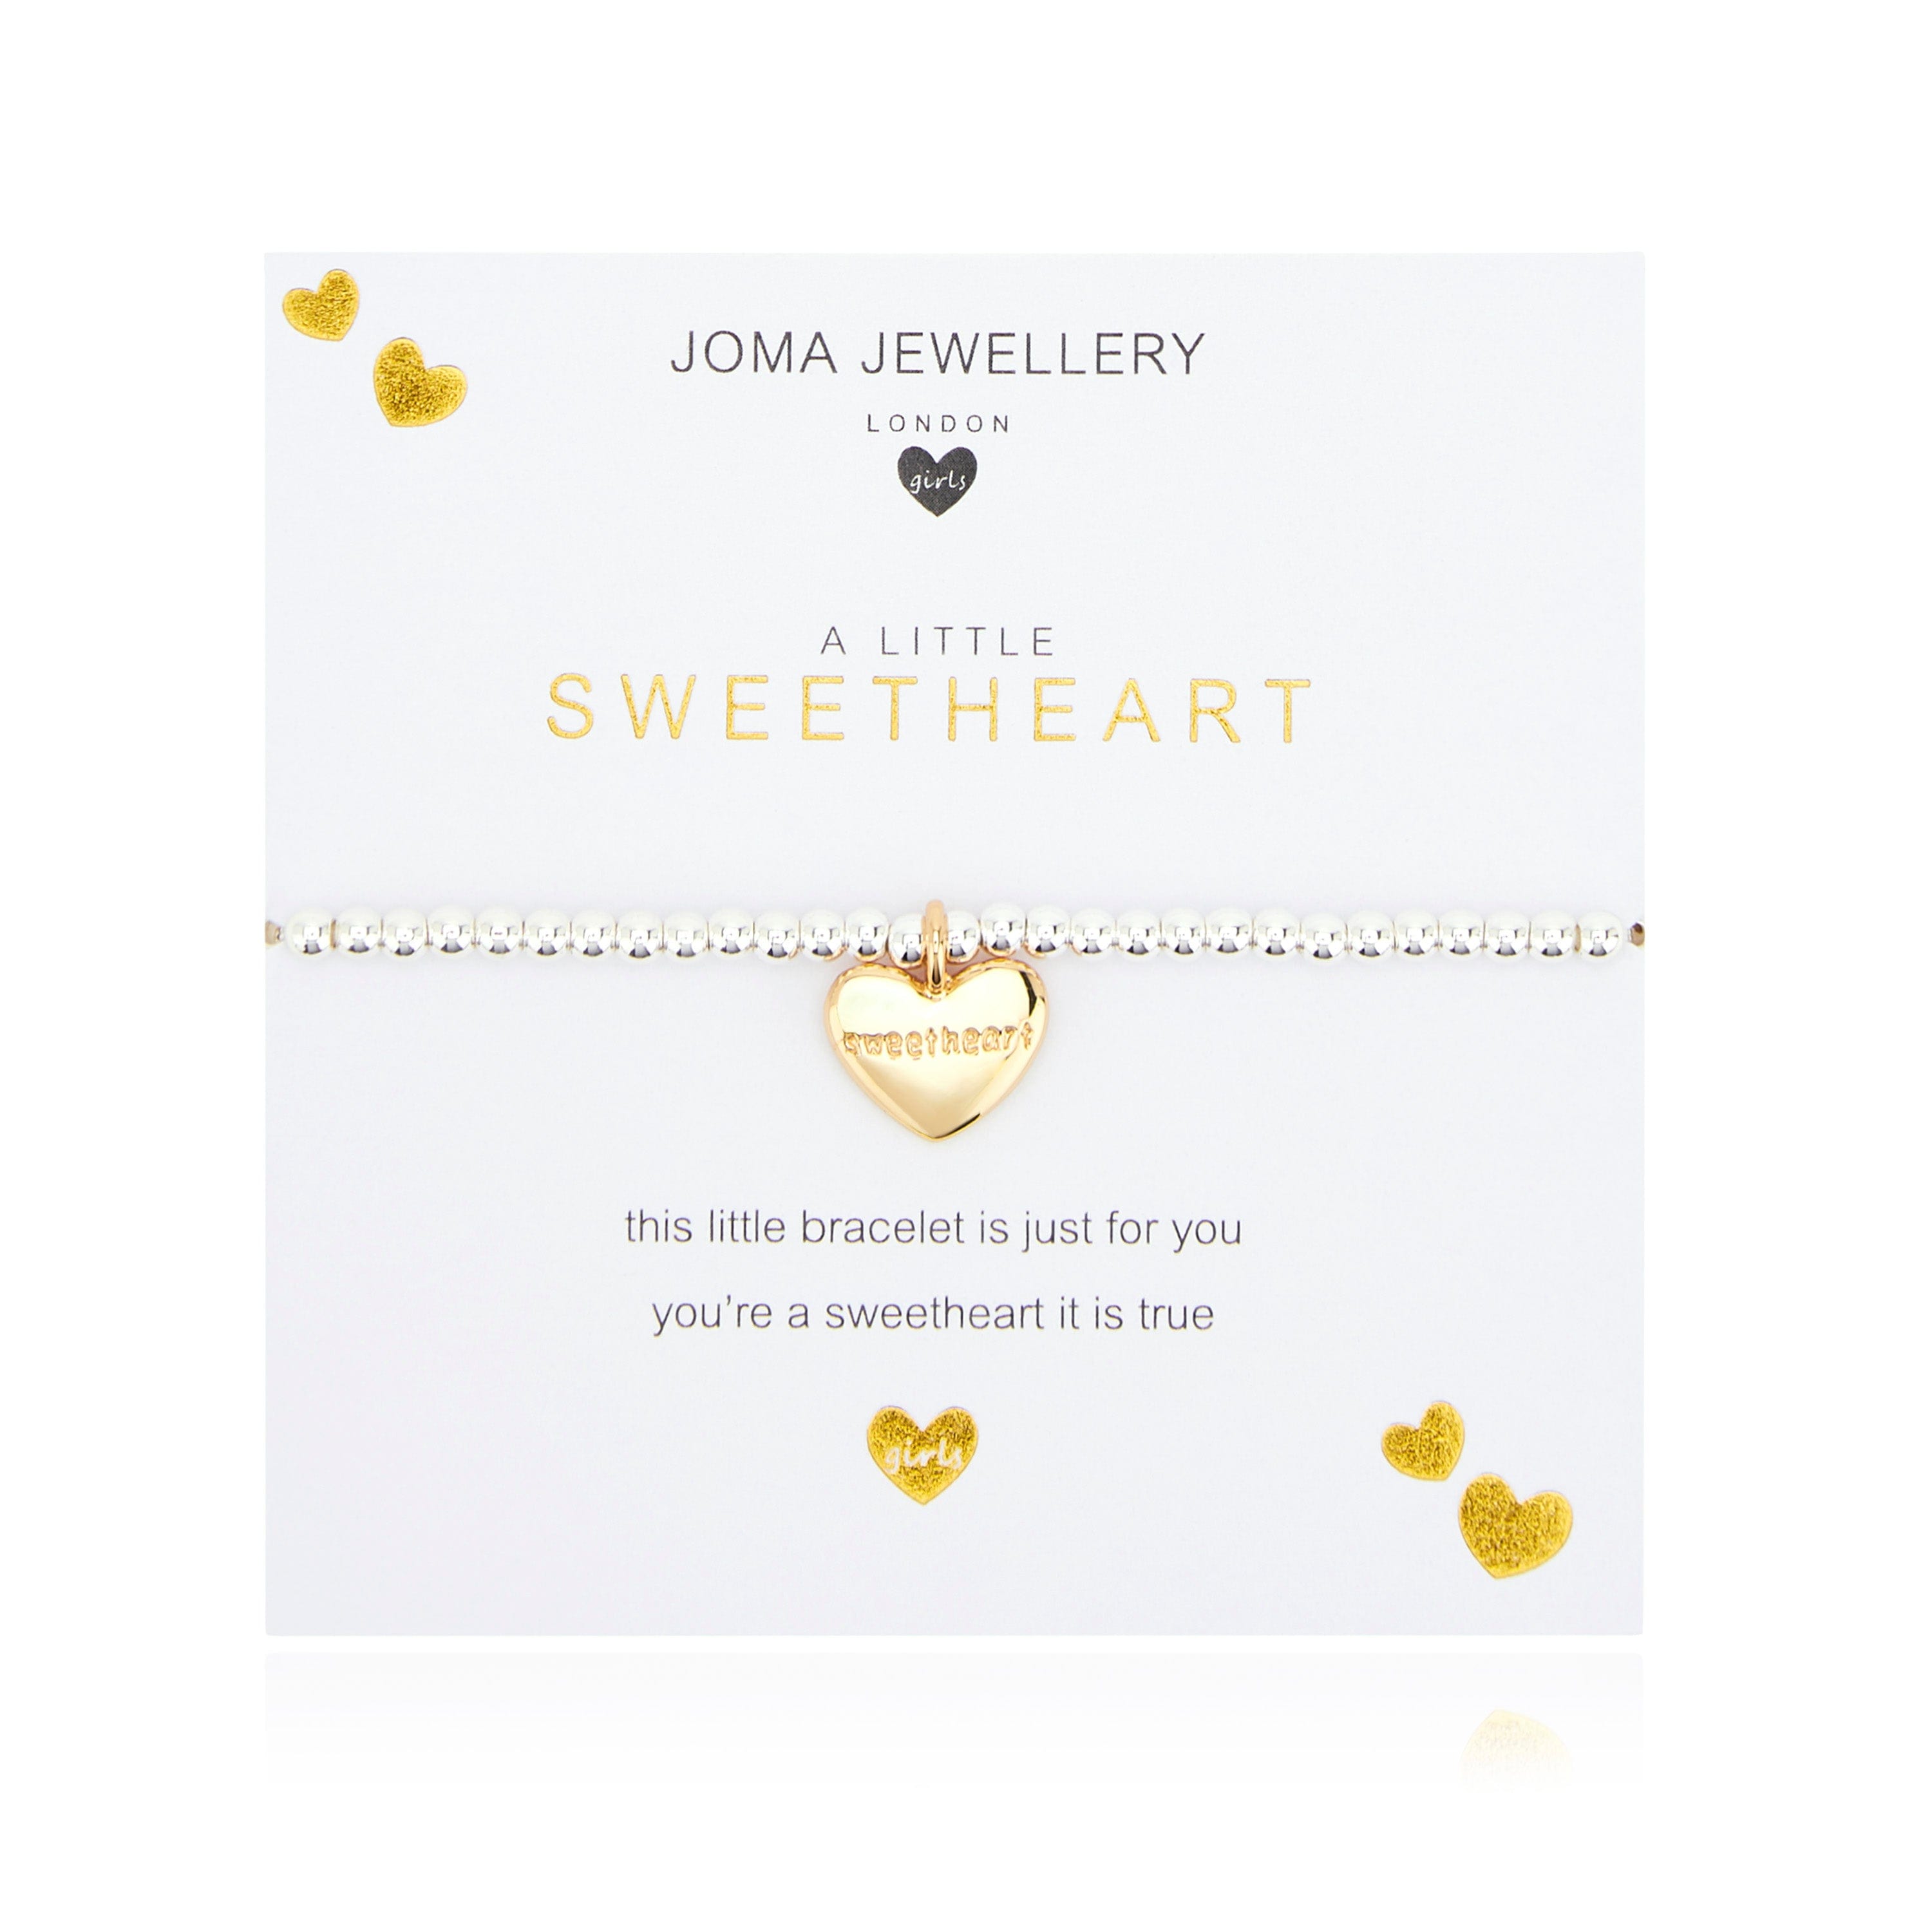 Joma Jewellery Childrens Bracelet Joma Jewellery Childrens Bracelet - A Little Sweetheart